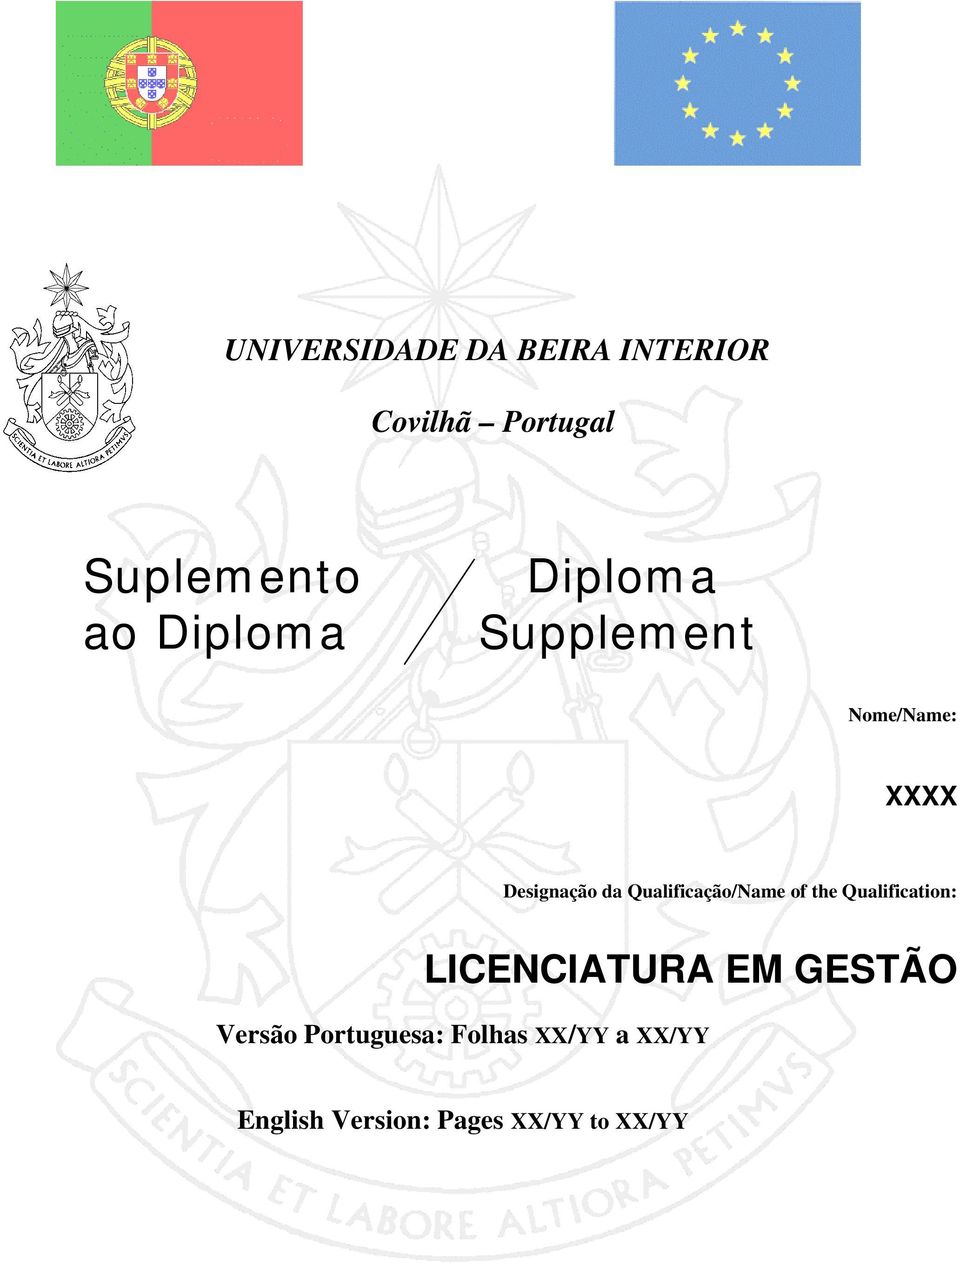 Qualificação/Name of the Qualification: LICENCIATURA EM GESTÃO